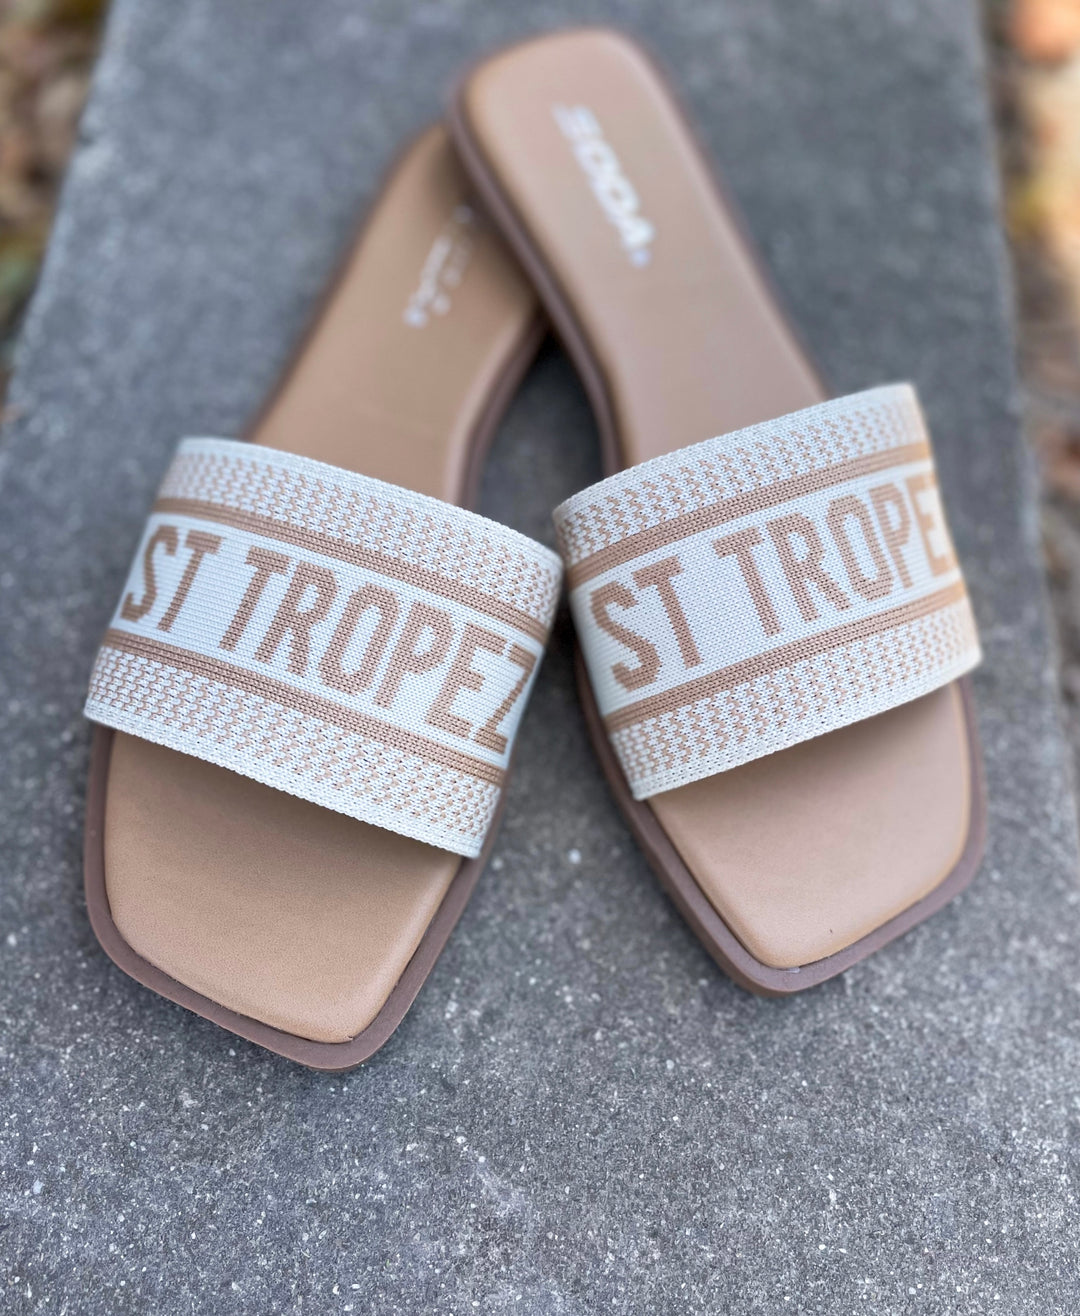 The St. Tropez Sandals